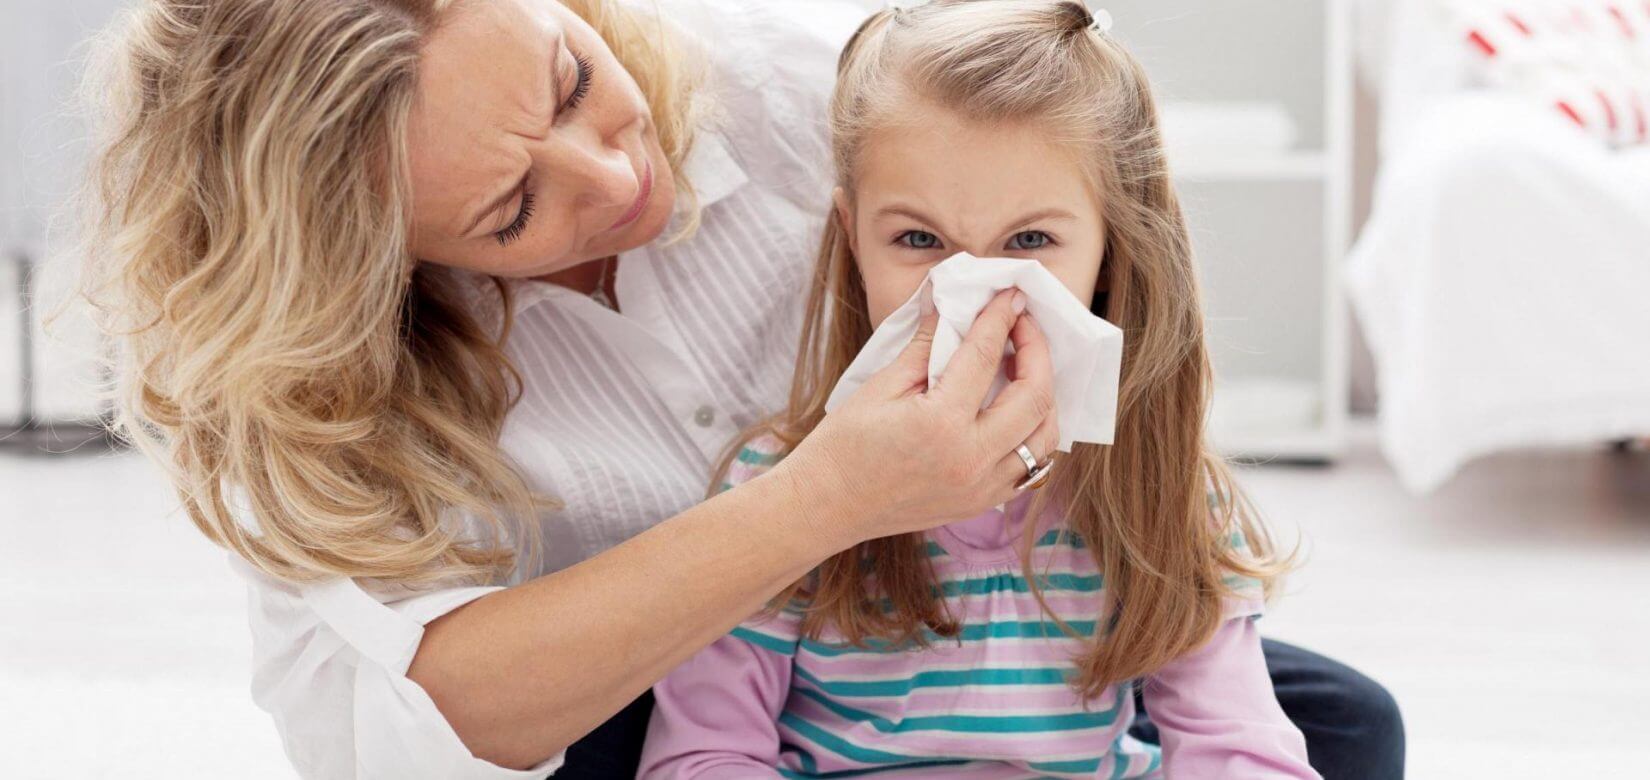 Πρόωρη έξαρση της γρίπης φέτος, εμβολιάστε τα παιδιά το ταχύτερο λέει η Λινού